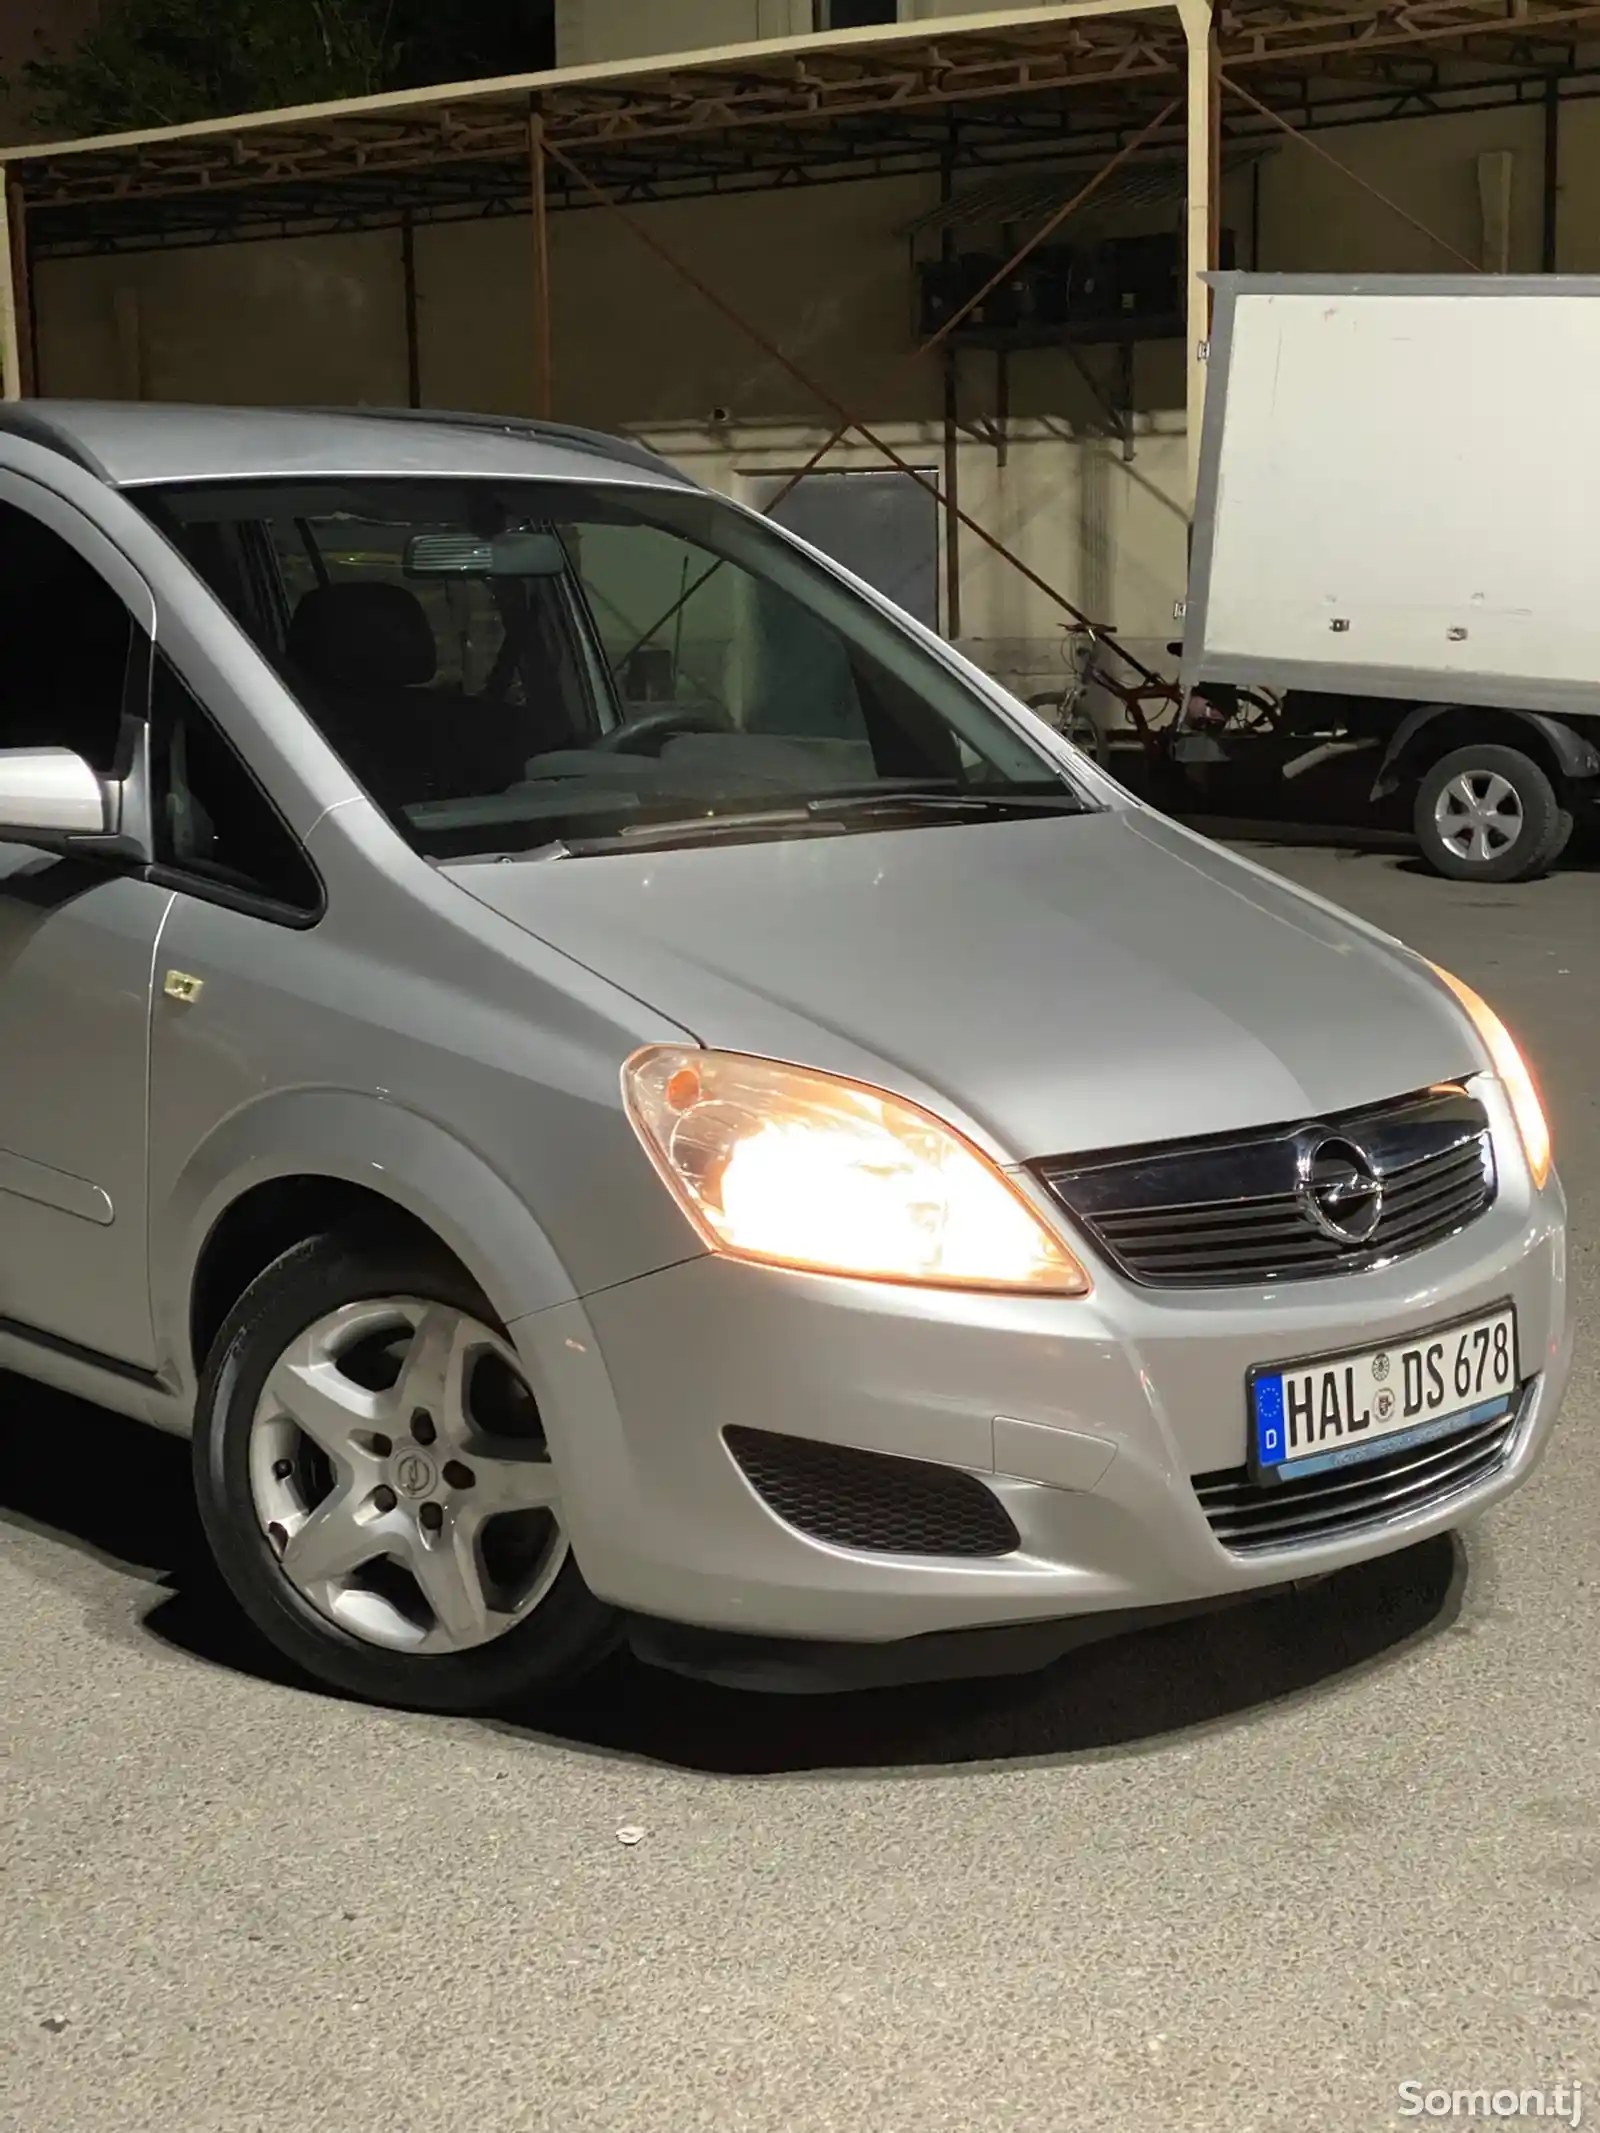 Opel Zafira, 2006-13